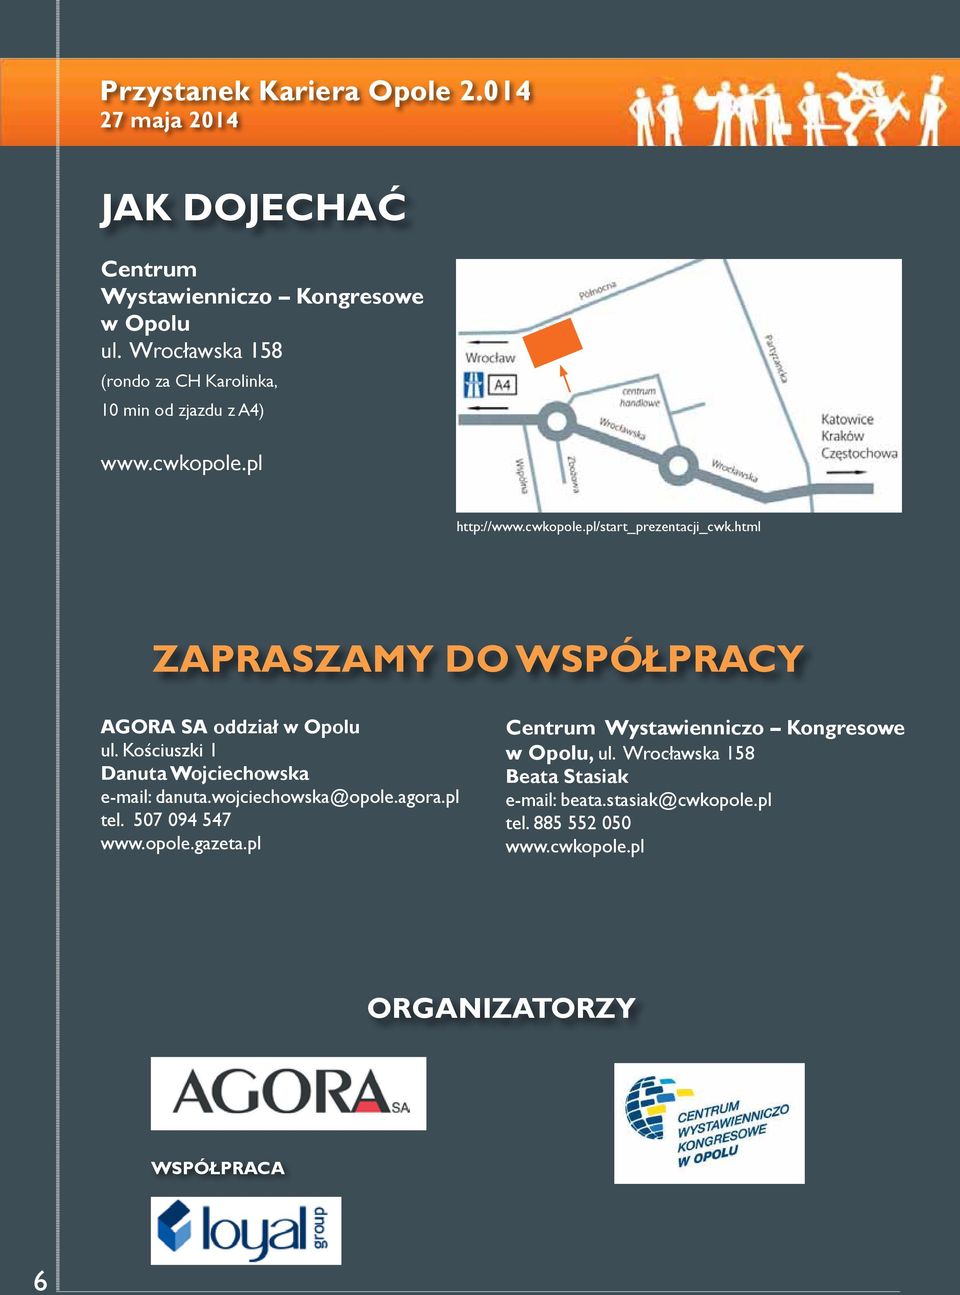 Kościuszki 1 Danuta Wojciechowska e-mail: danuta.wojciechowska@opole.agora.pl tel. 507 094 547 www.opole.gazeta.